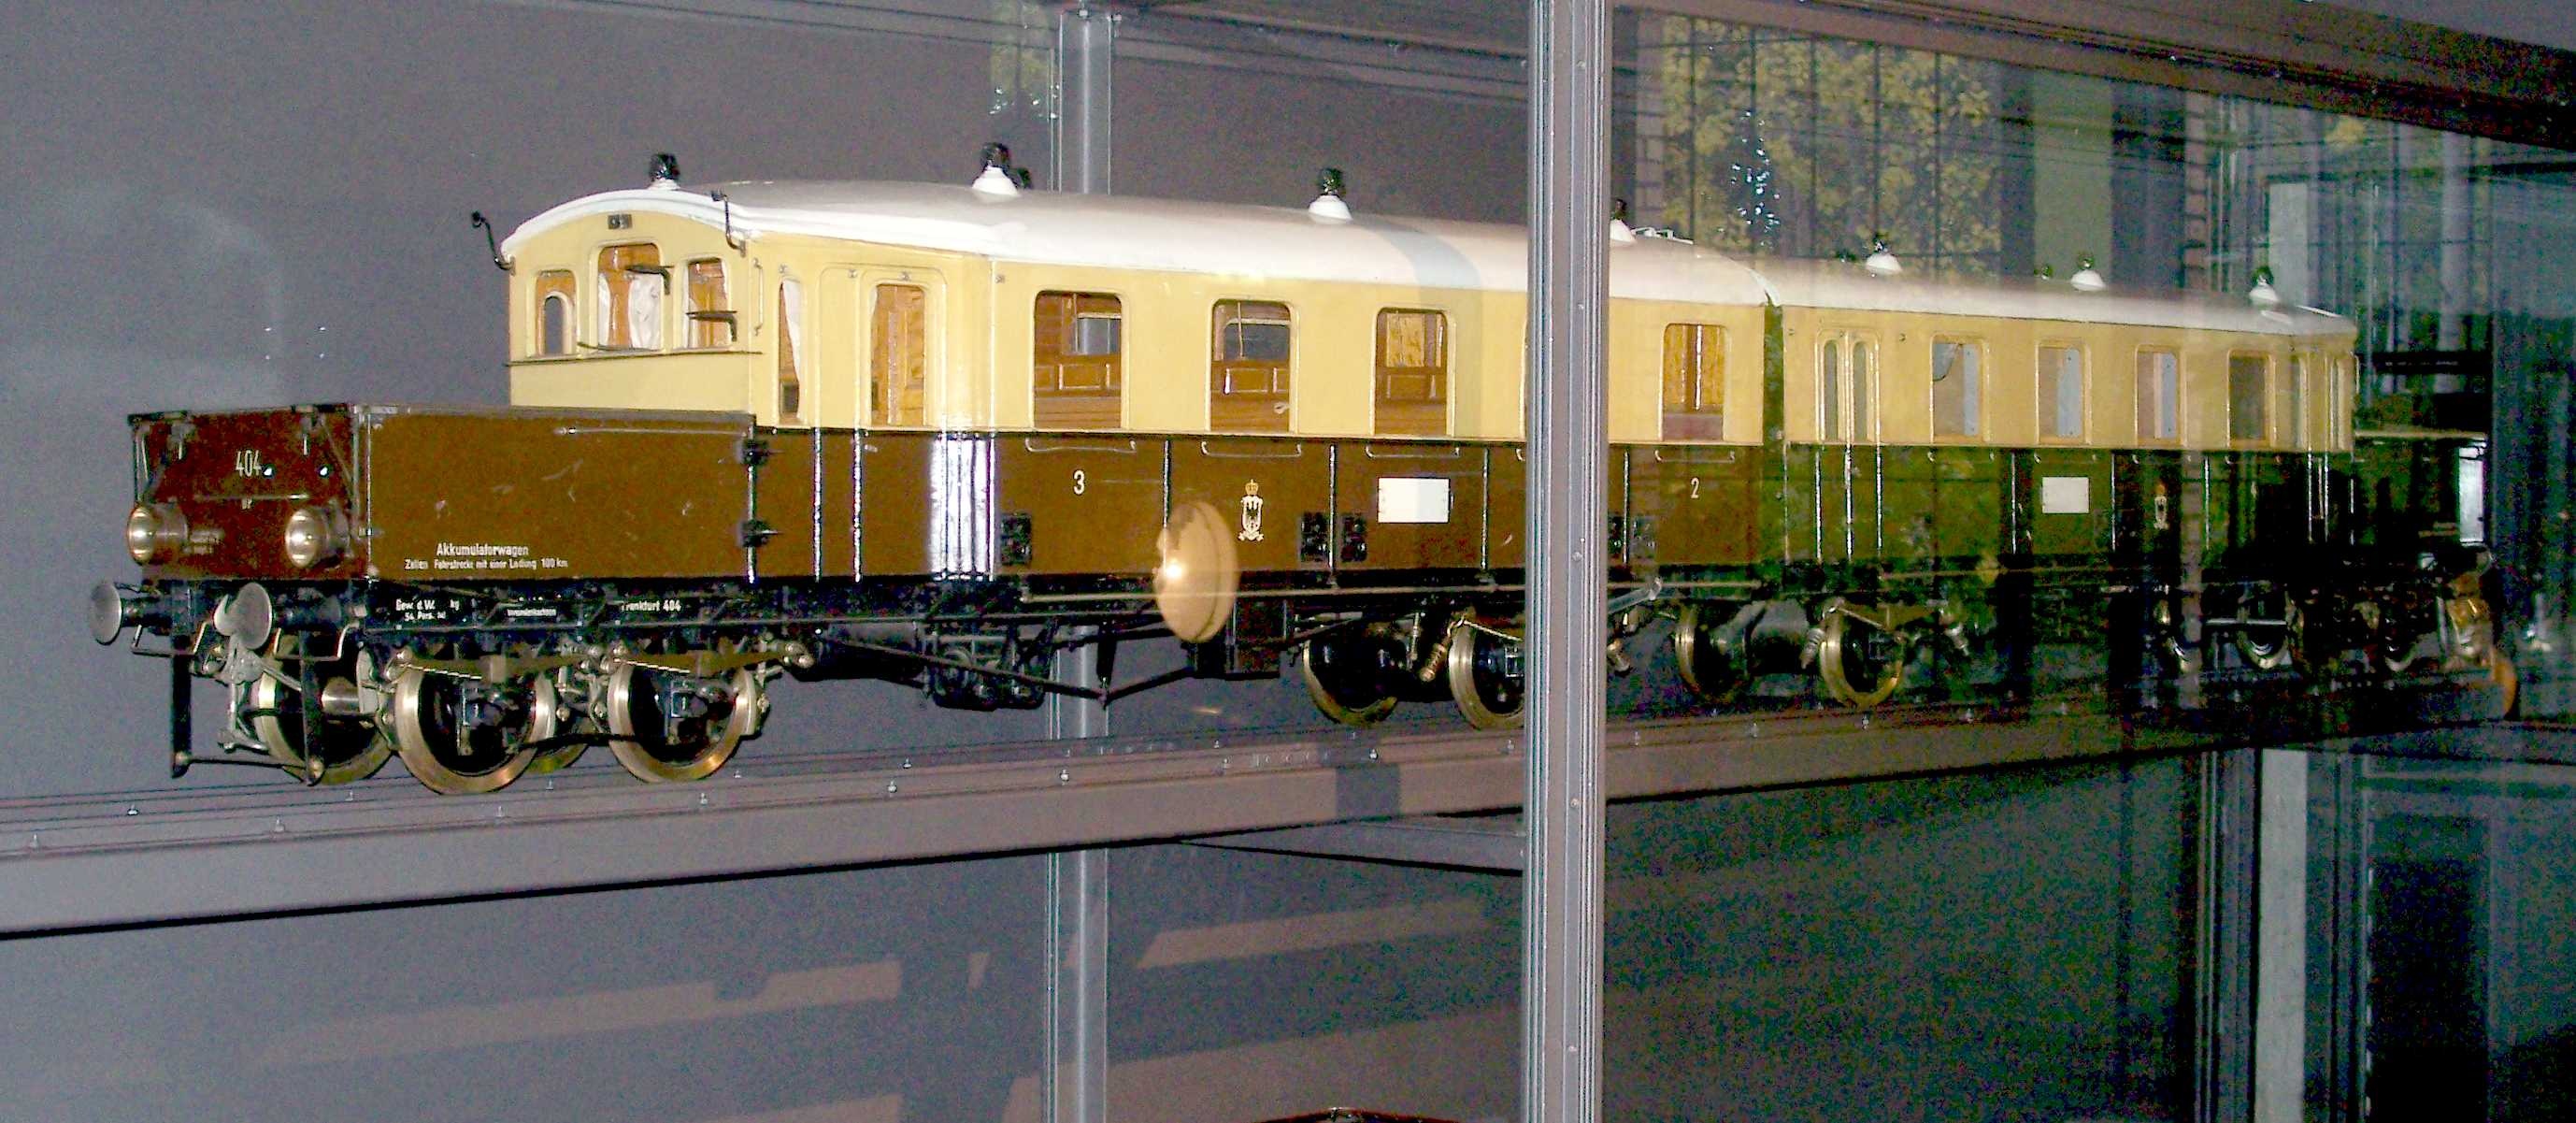 Akkumulatortriebwagen 403/404 Bauart "Wittfeld", Baureihe ET178 der Deutschen Bahn, Modell 1:10 (Stiftung Deutsches Technikmuseum Berlin CC0)